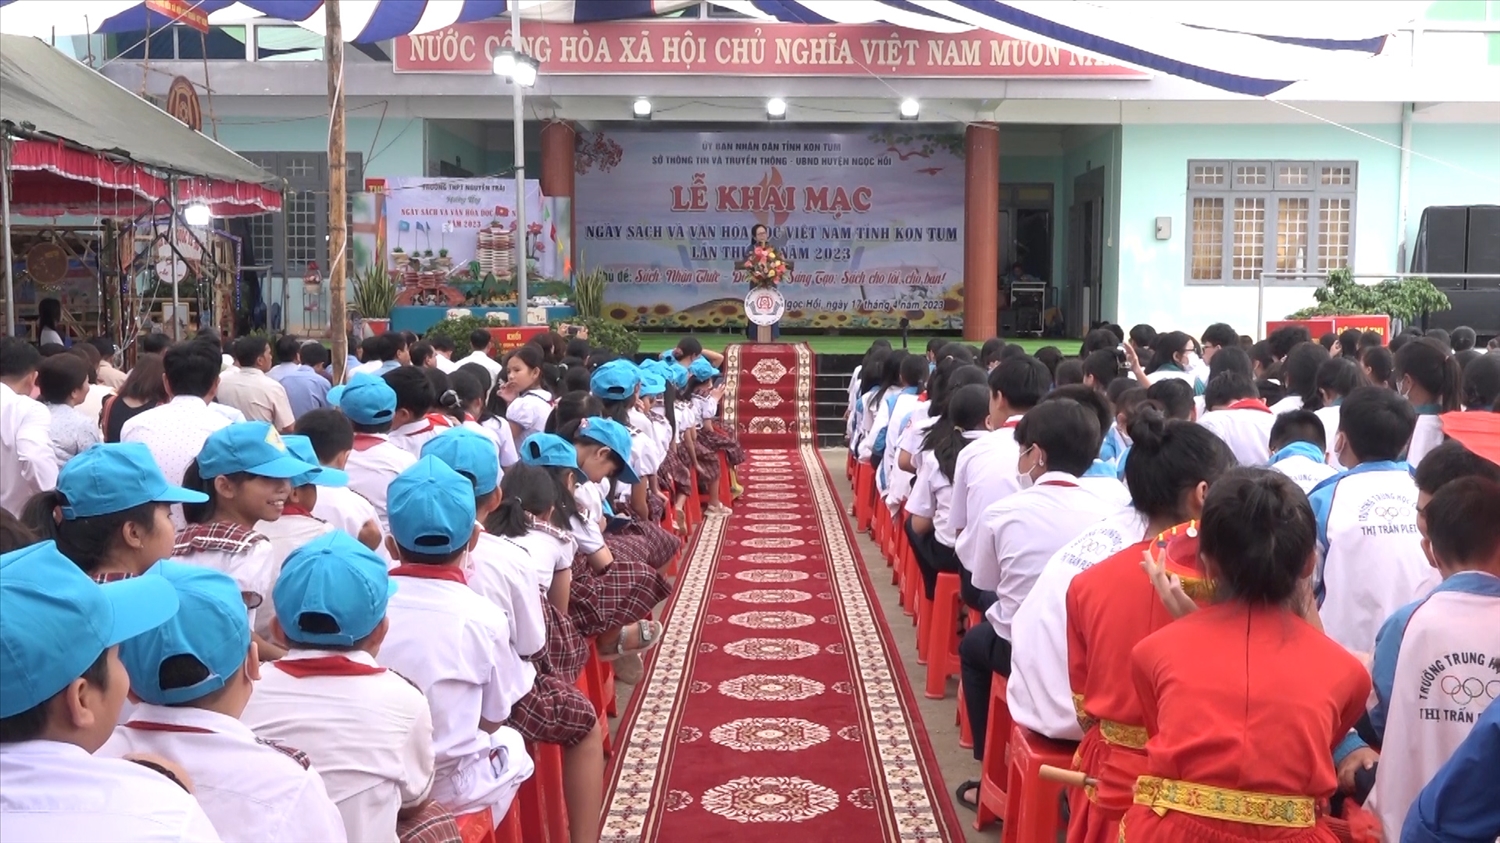 Quang cảnh Ngày sách và Văn hóa đọc Việt Nam tỉnh Kon Tum năm 2023